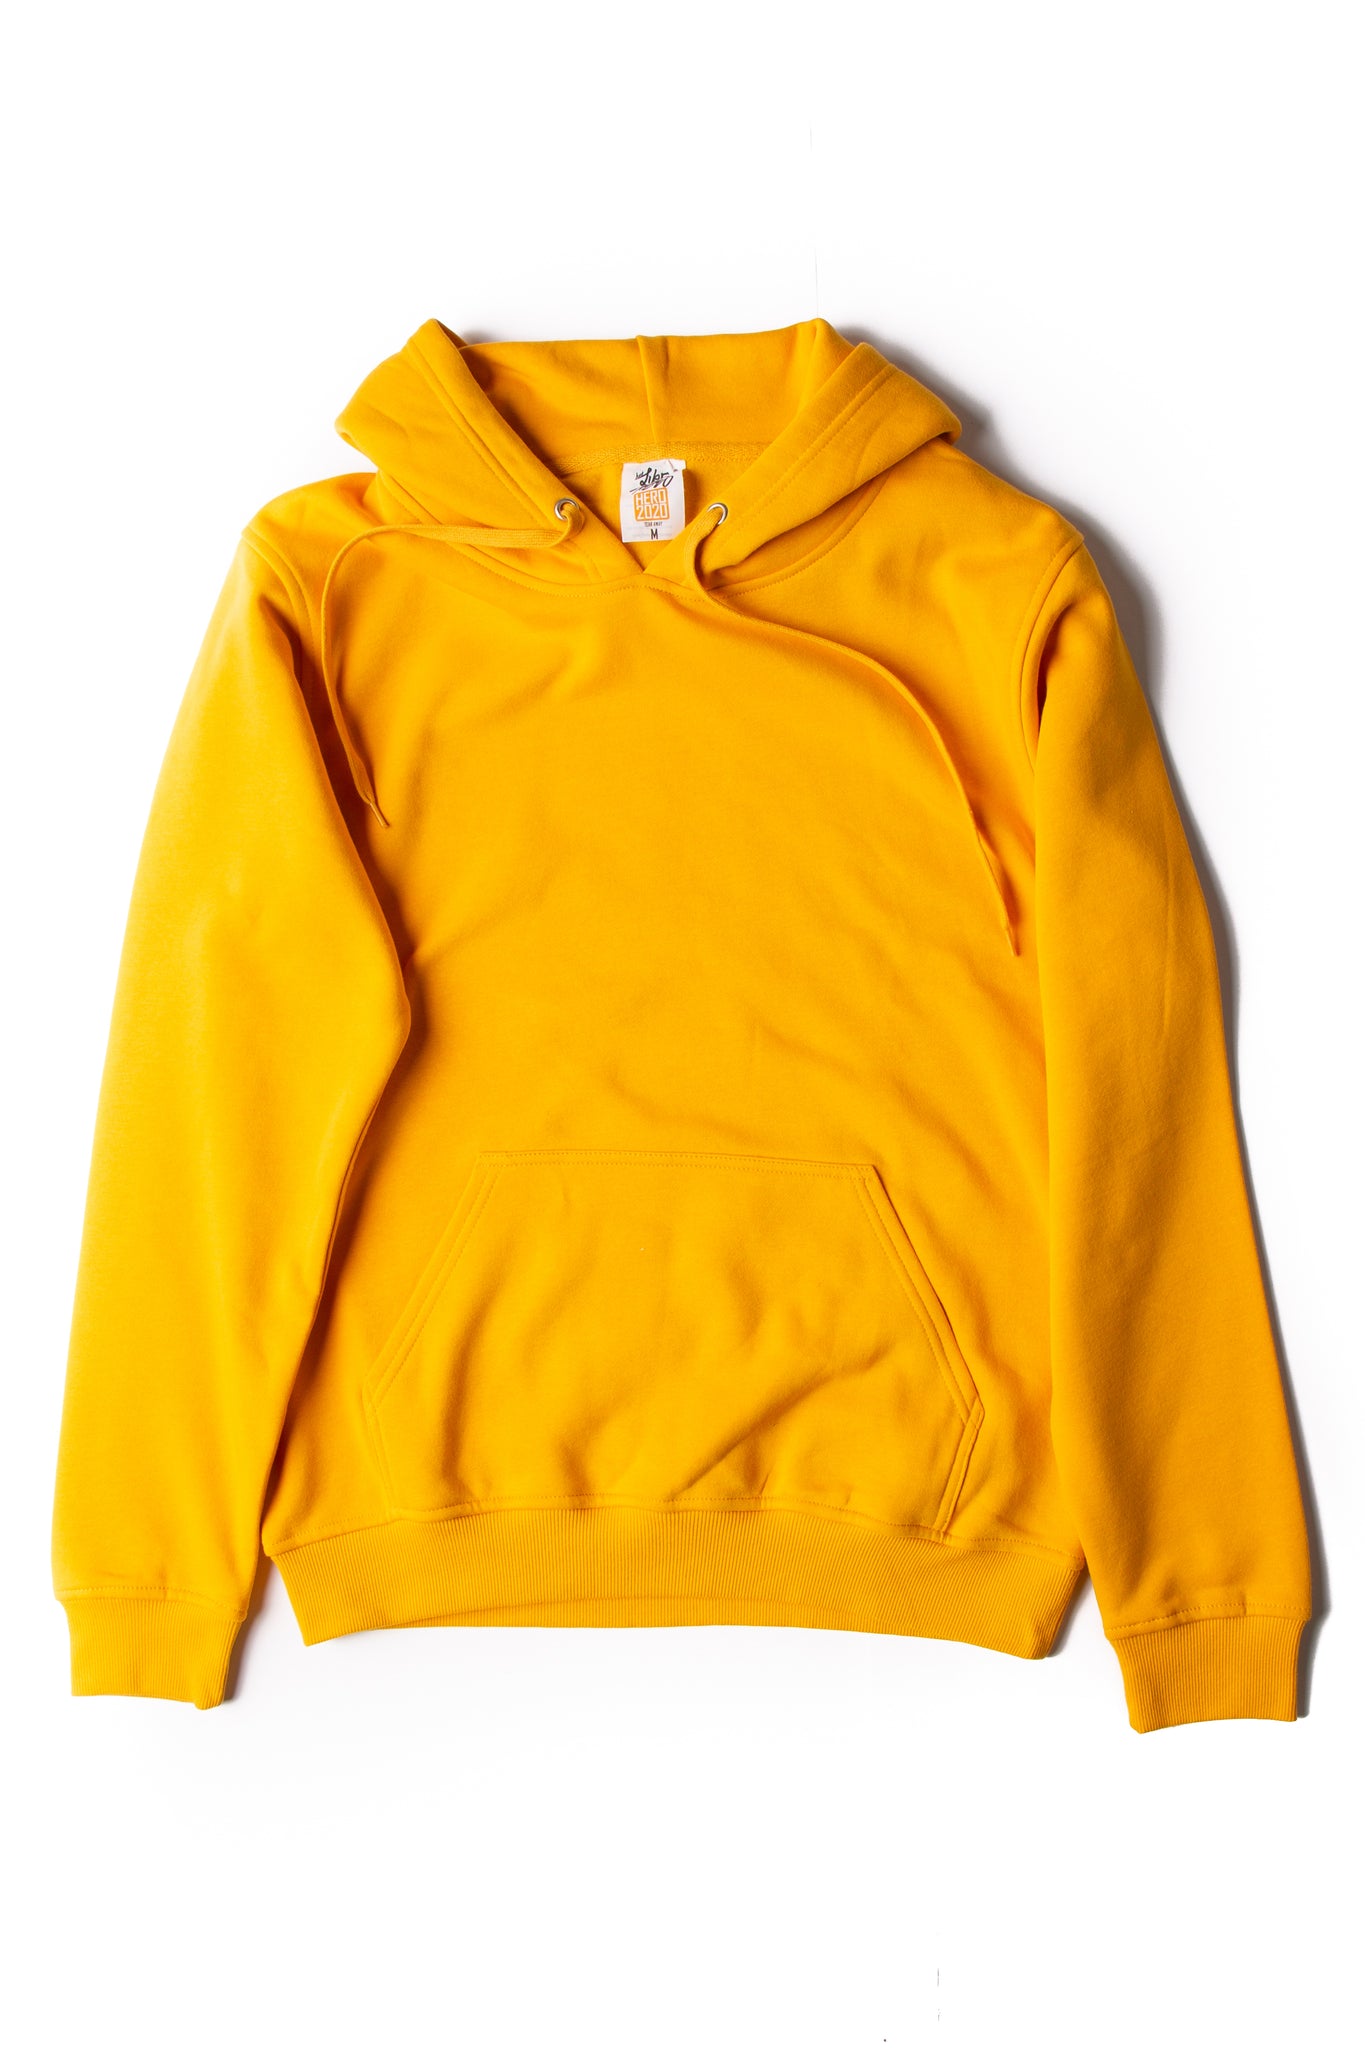 Wholesale Blank Hoodies Sweatshirts Apparel In Canada